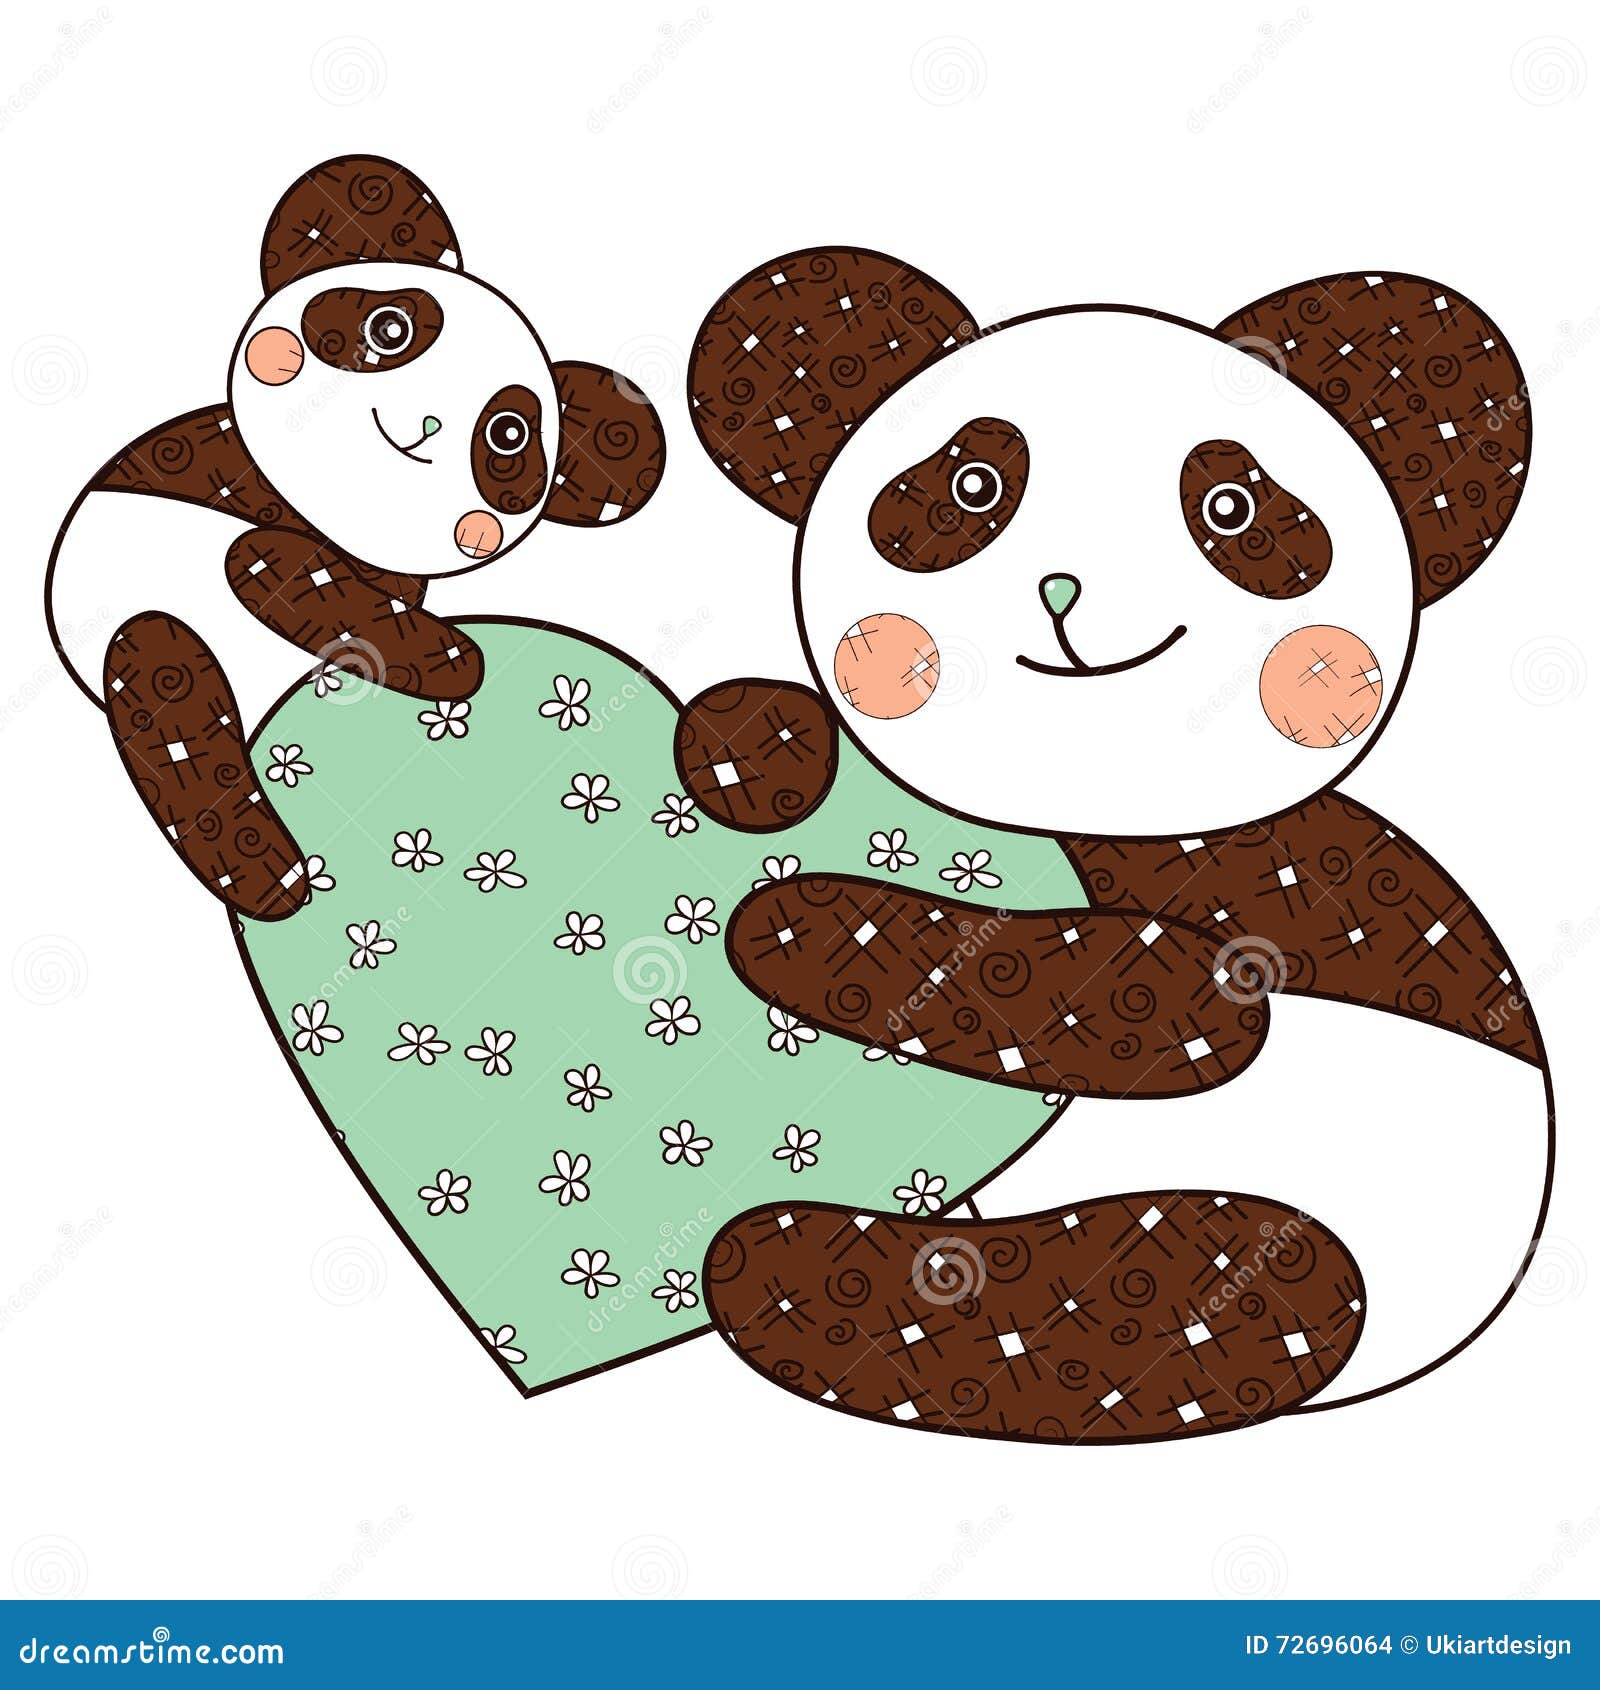 Desenho de Kawaii panda com coração para colorir